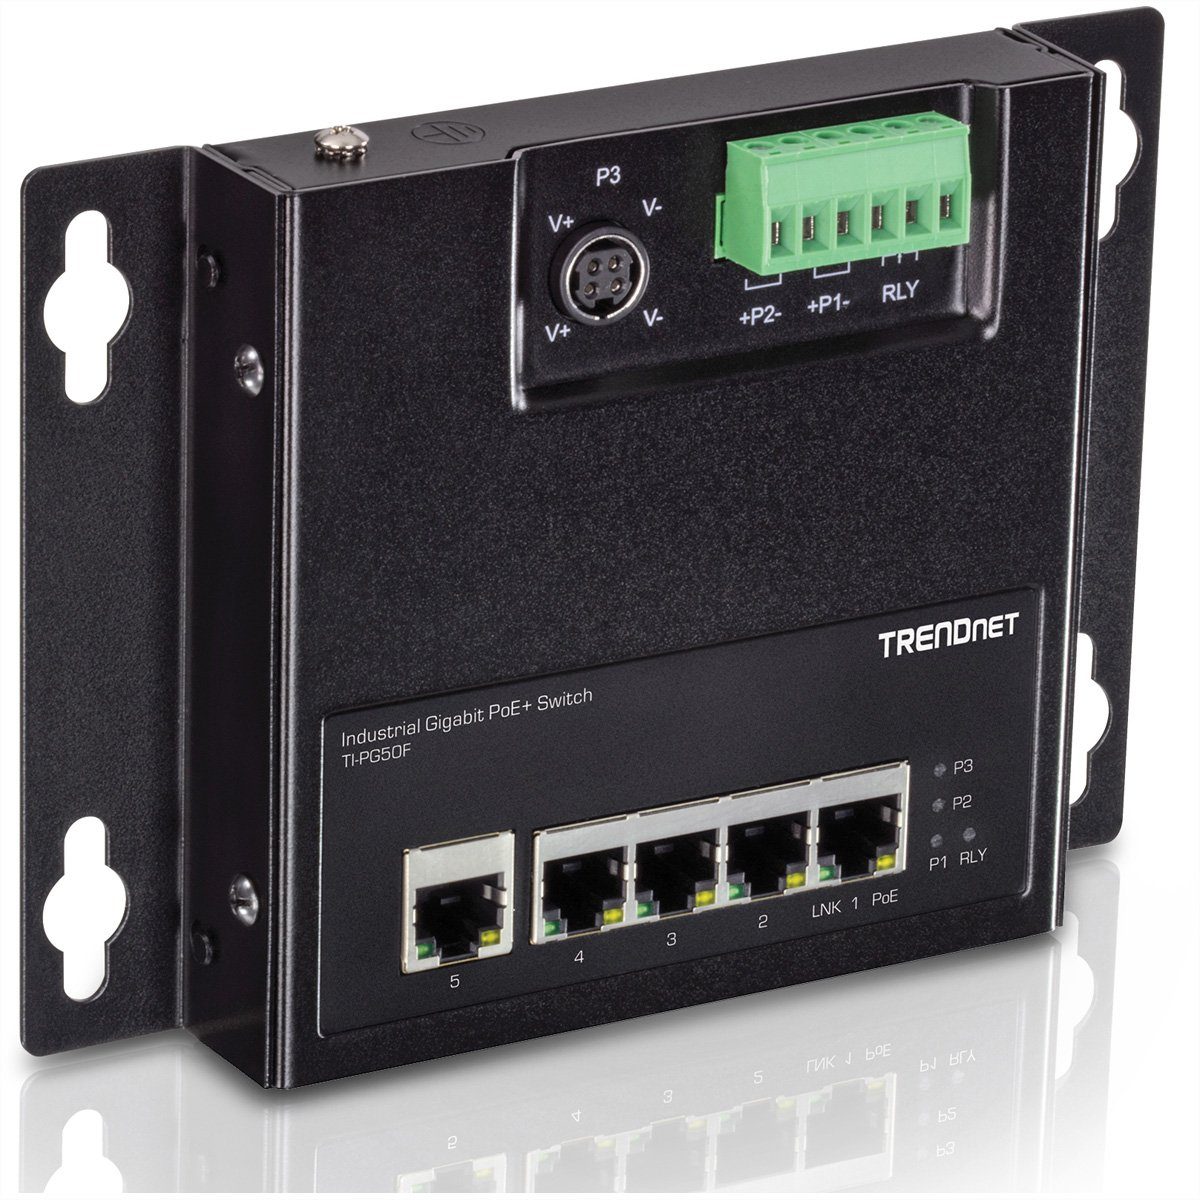 TI-PG50F (wandmontierbar) Industrial Gigabit Netzwerk-Switch Front Switch PoE+ 5-Port Access Trendnet